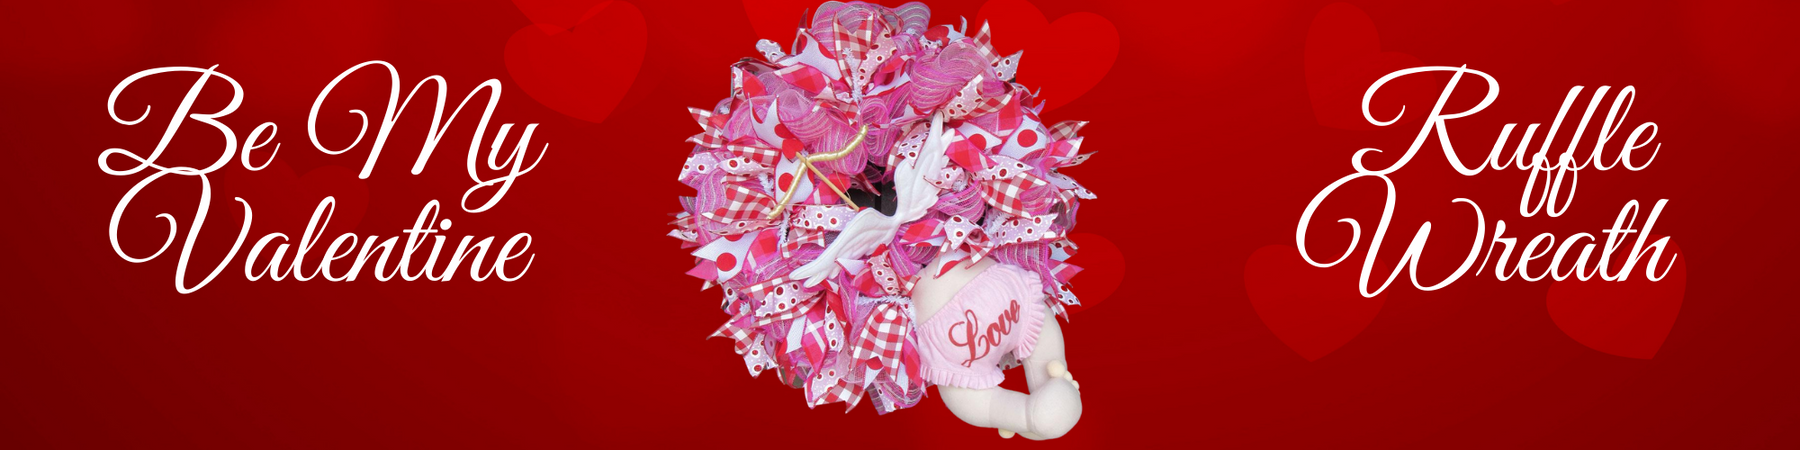 Cupid Valentine Deco Mesh Wreath Tutorial